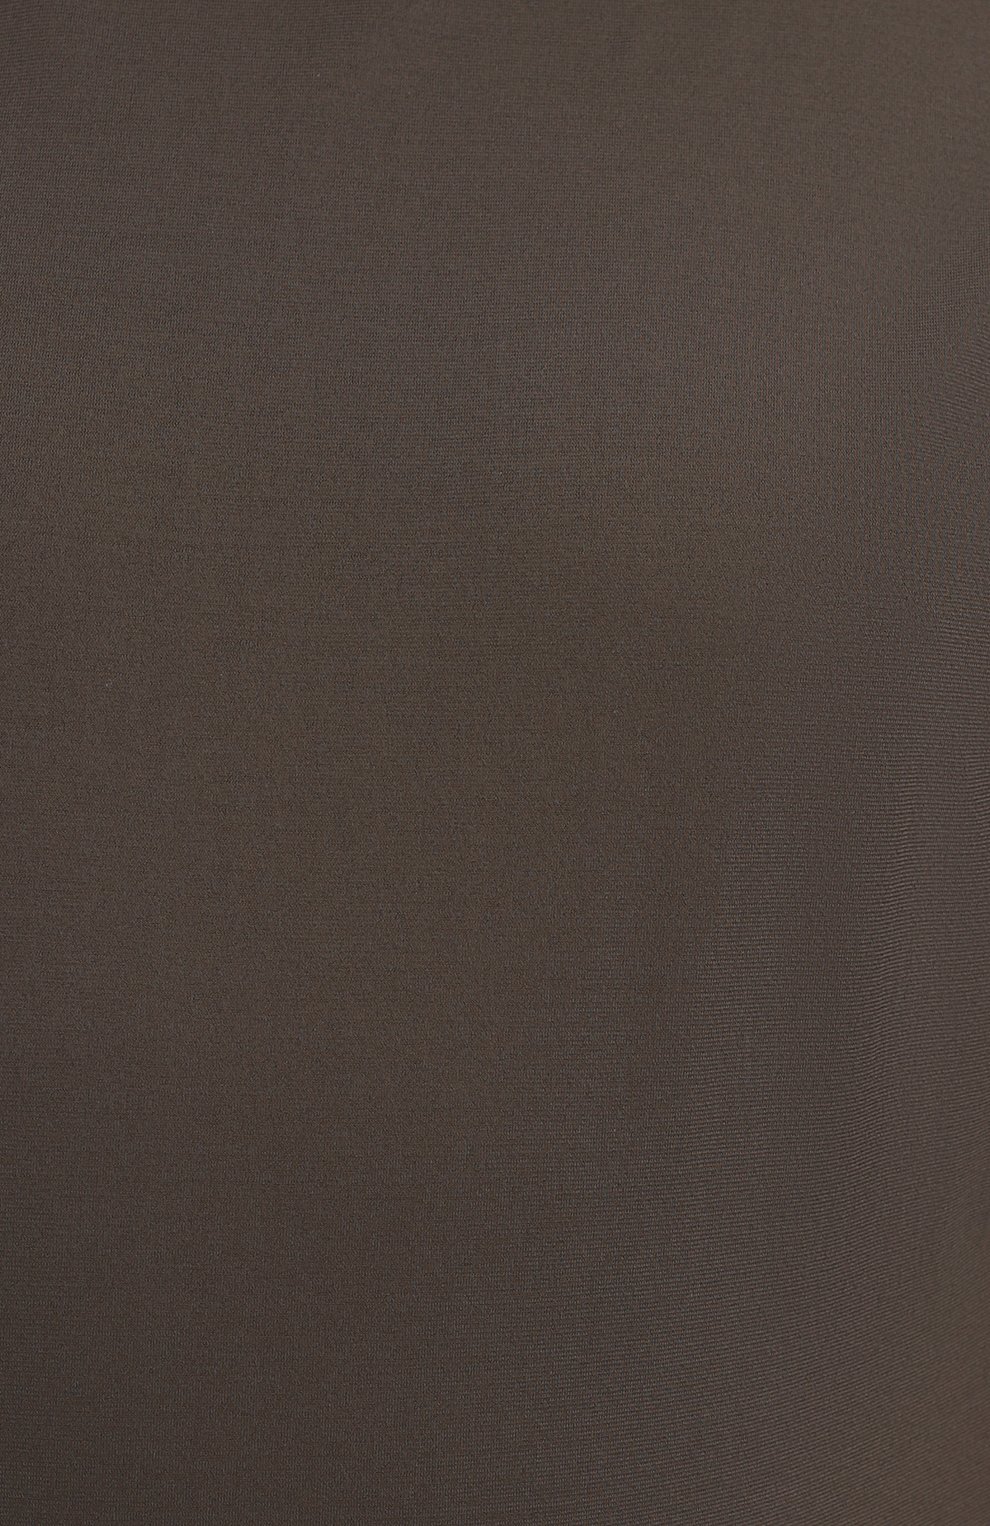 Мужская хлопковая футболка KIRED хаки цвета, арт. WBACI0MW732100200F/64-74 | Фото 5 (Big sizes: Big Sizes; Принт: Без принта; Рукава: Короткие; Длина (для топов): Удлиненные; Материал внешний: Хлопок; Стили: Кэжуэл)